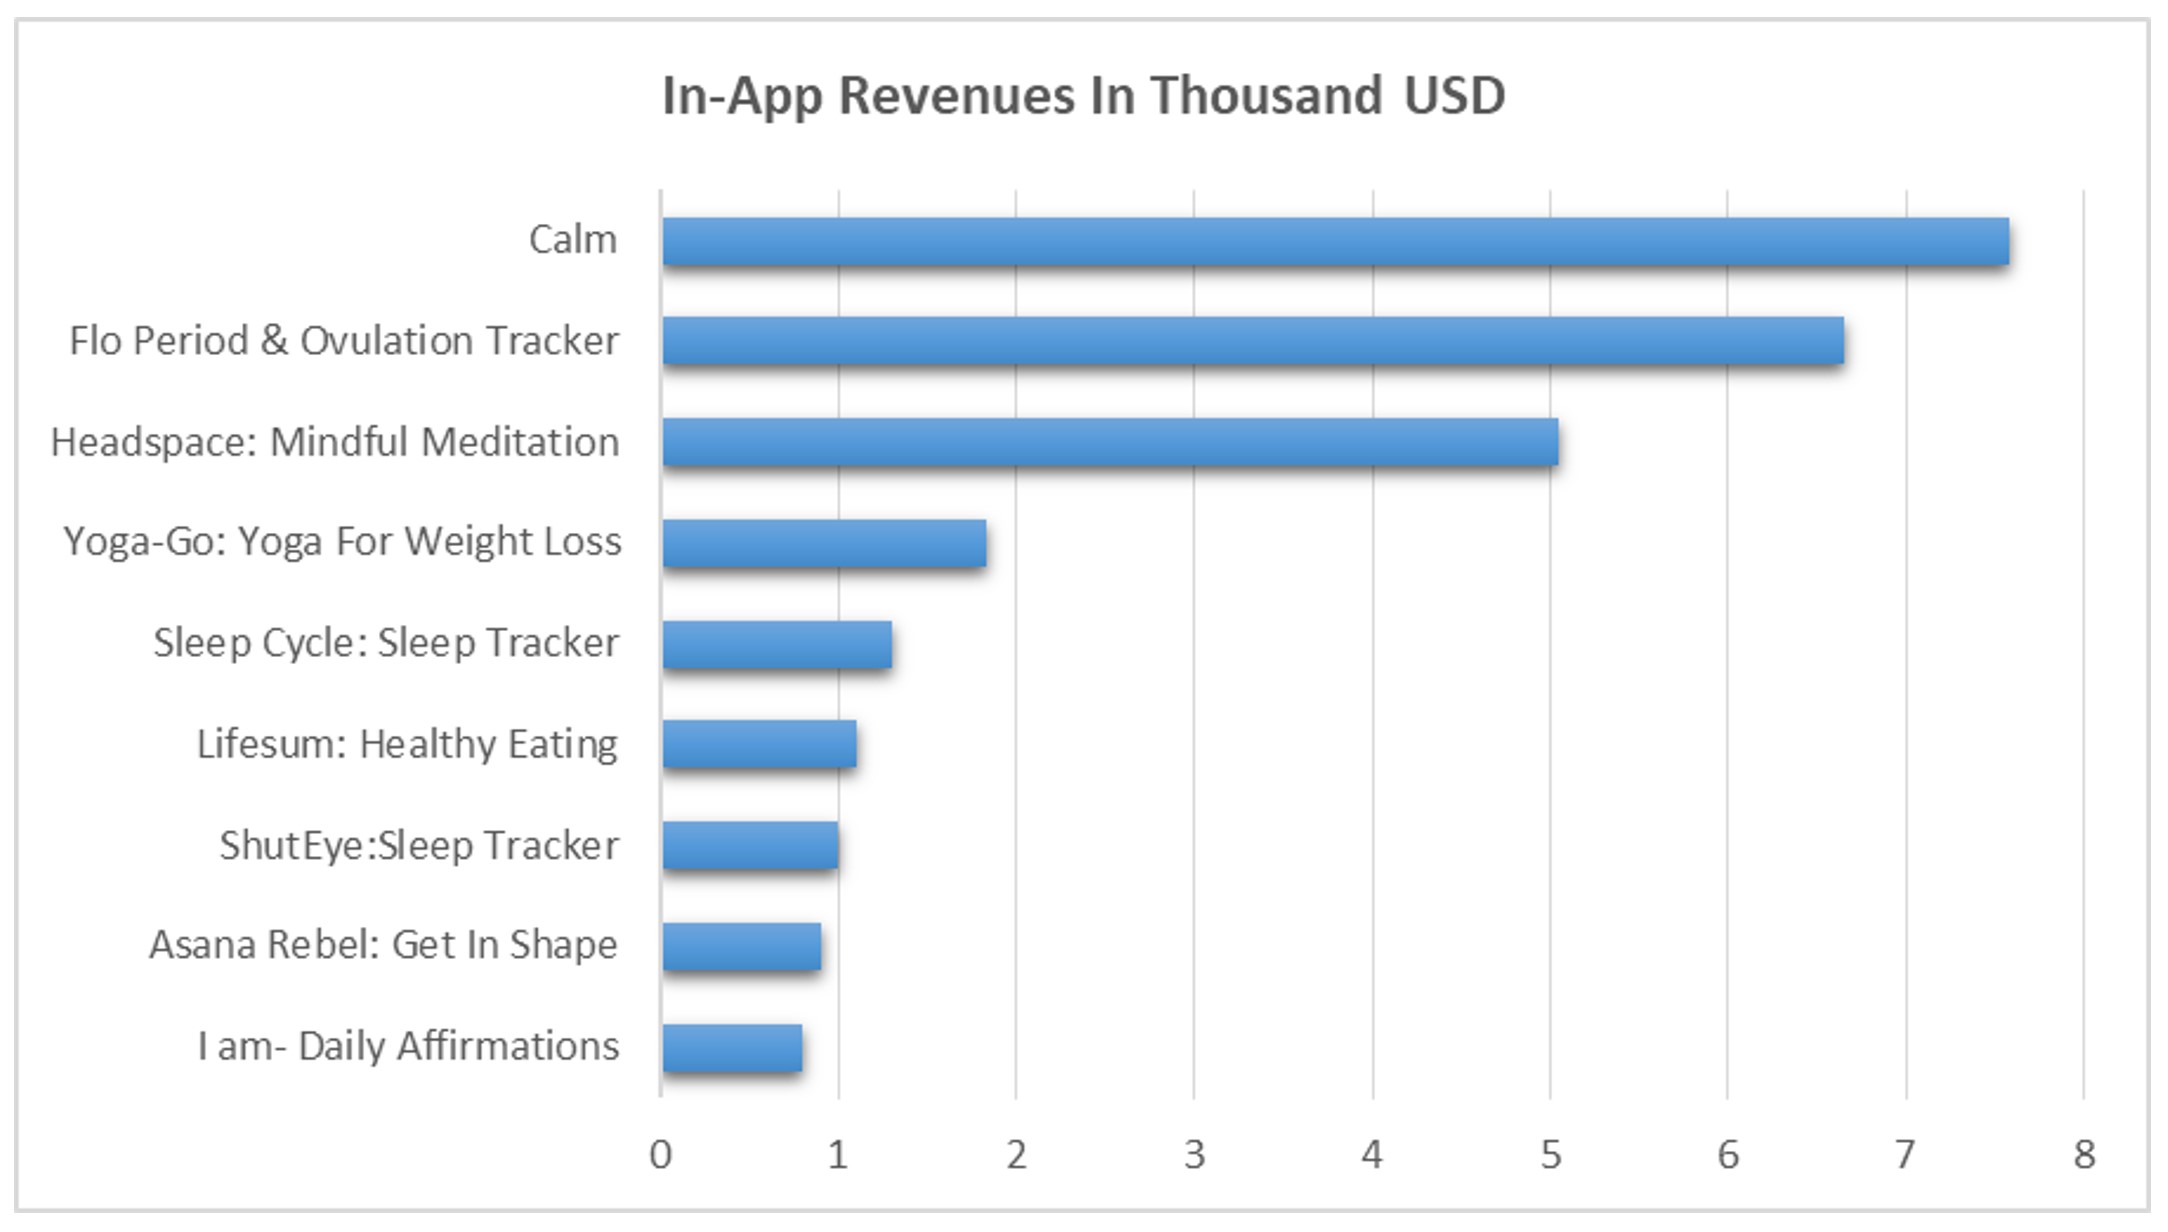 in app revenue of calm app